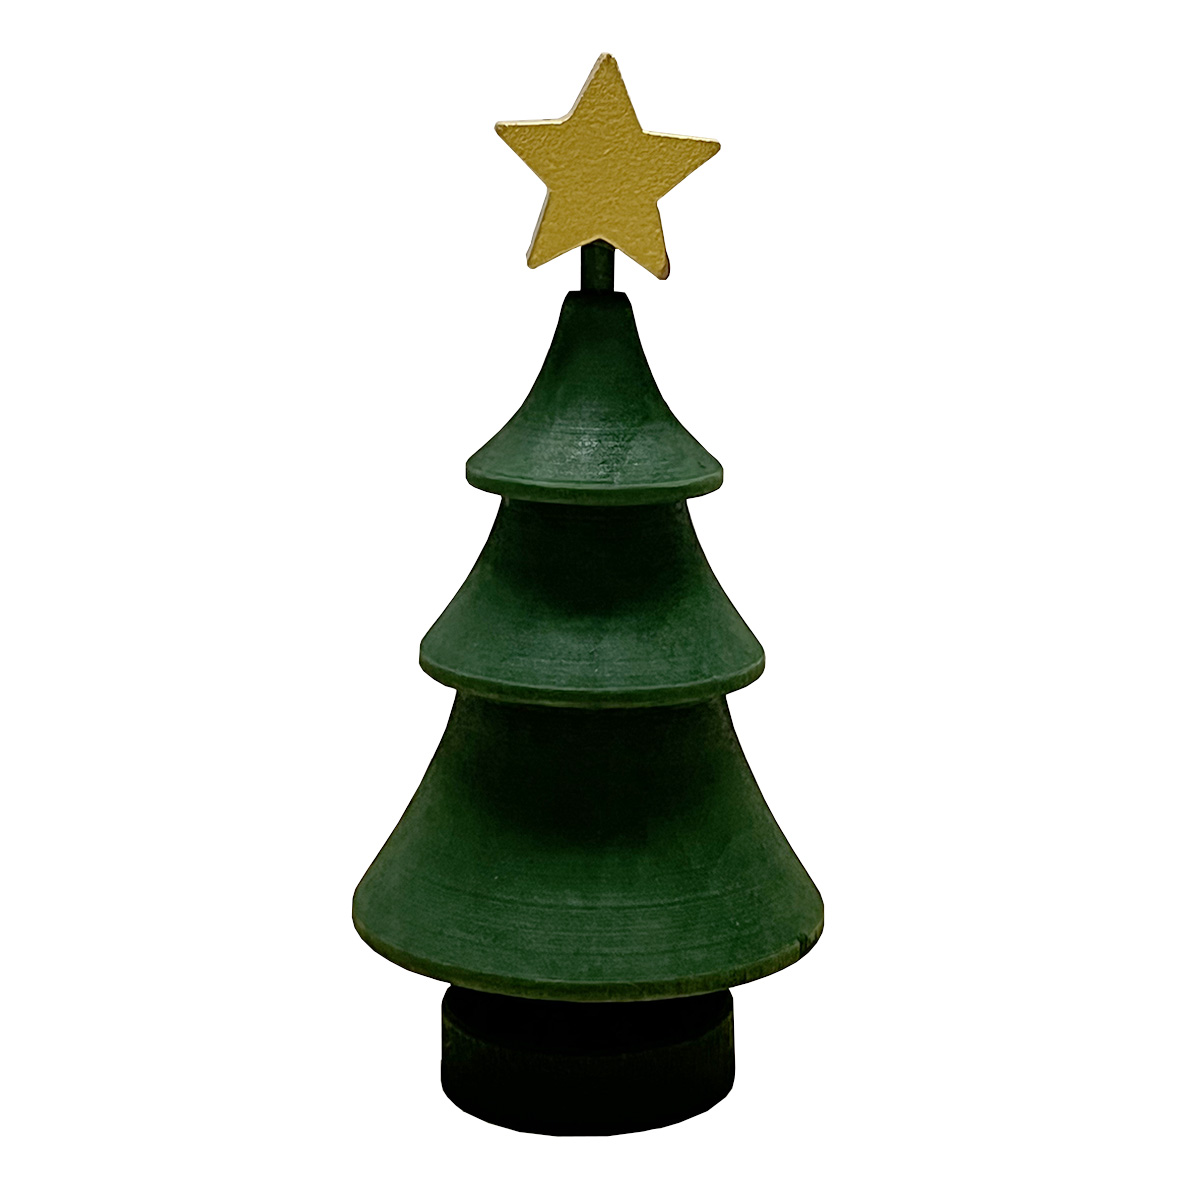 ラッセントレー Larssons tra 木製ツリー 44849-1401 グリーン ゴールド スタークリスマス 置物 ツリー 木製 飾り プレゼント 北欧雑貨ク